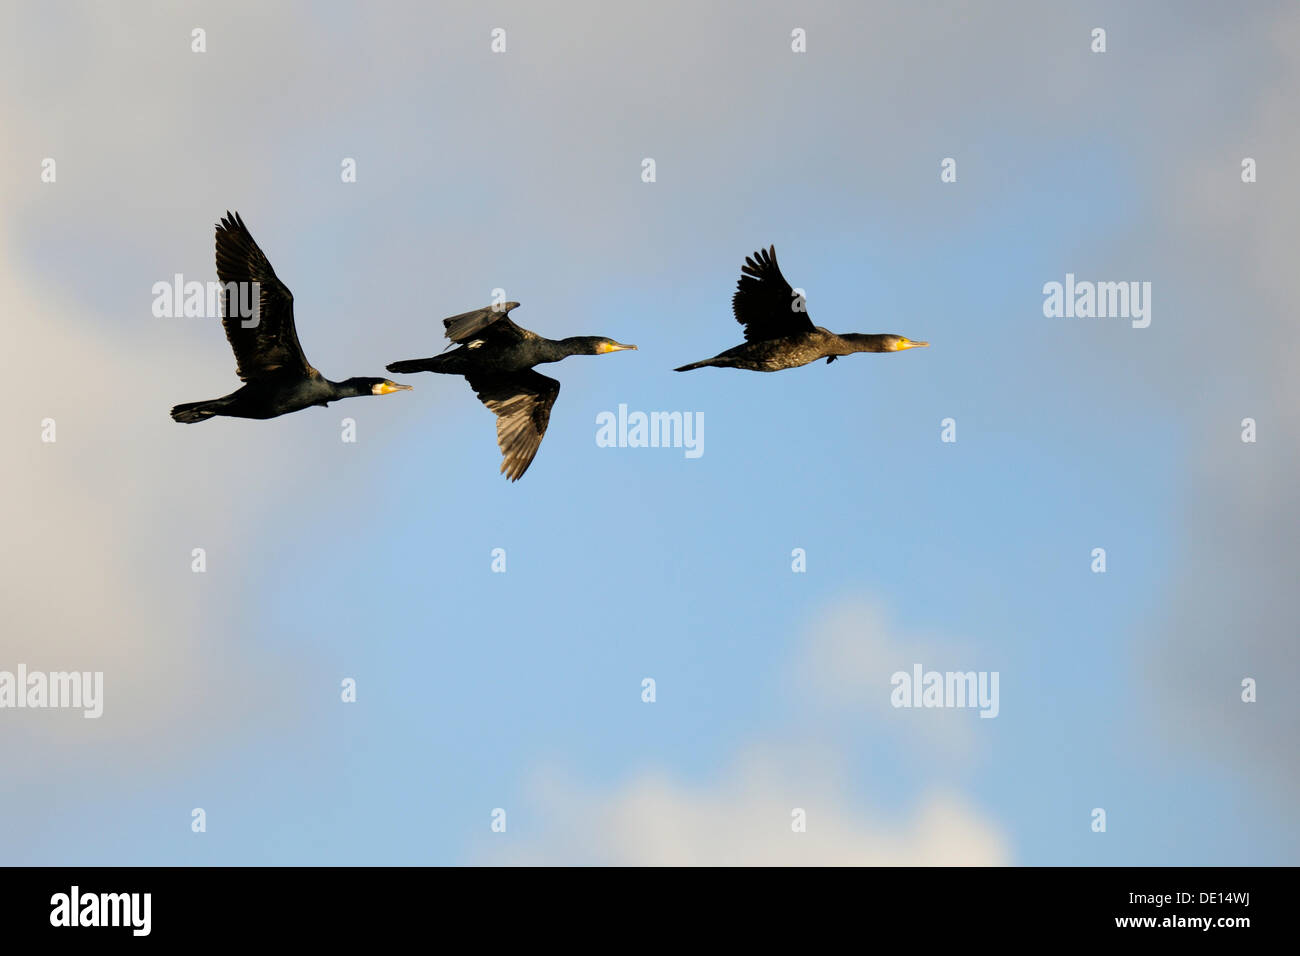 Trois cormorans (Phalacrocorax carbo) en vol, Texel, Îles des Wadden, Pays-Bas, Hollande, Europe Banque D'Images